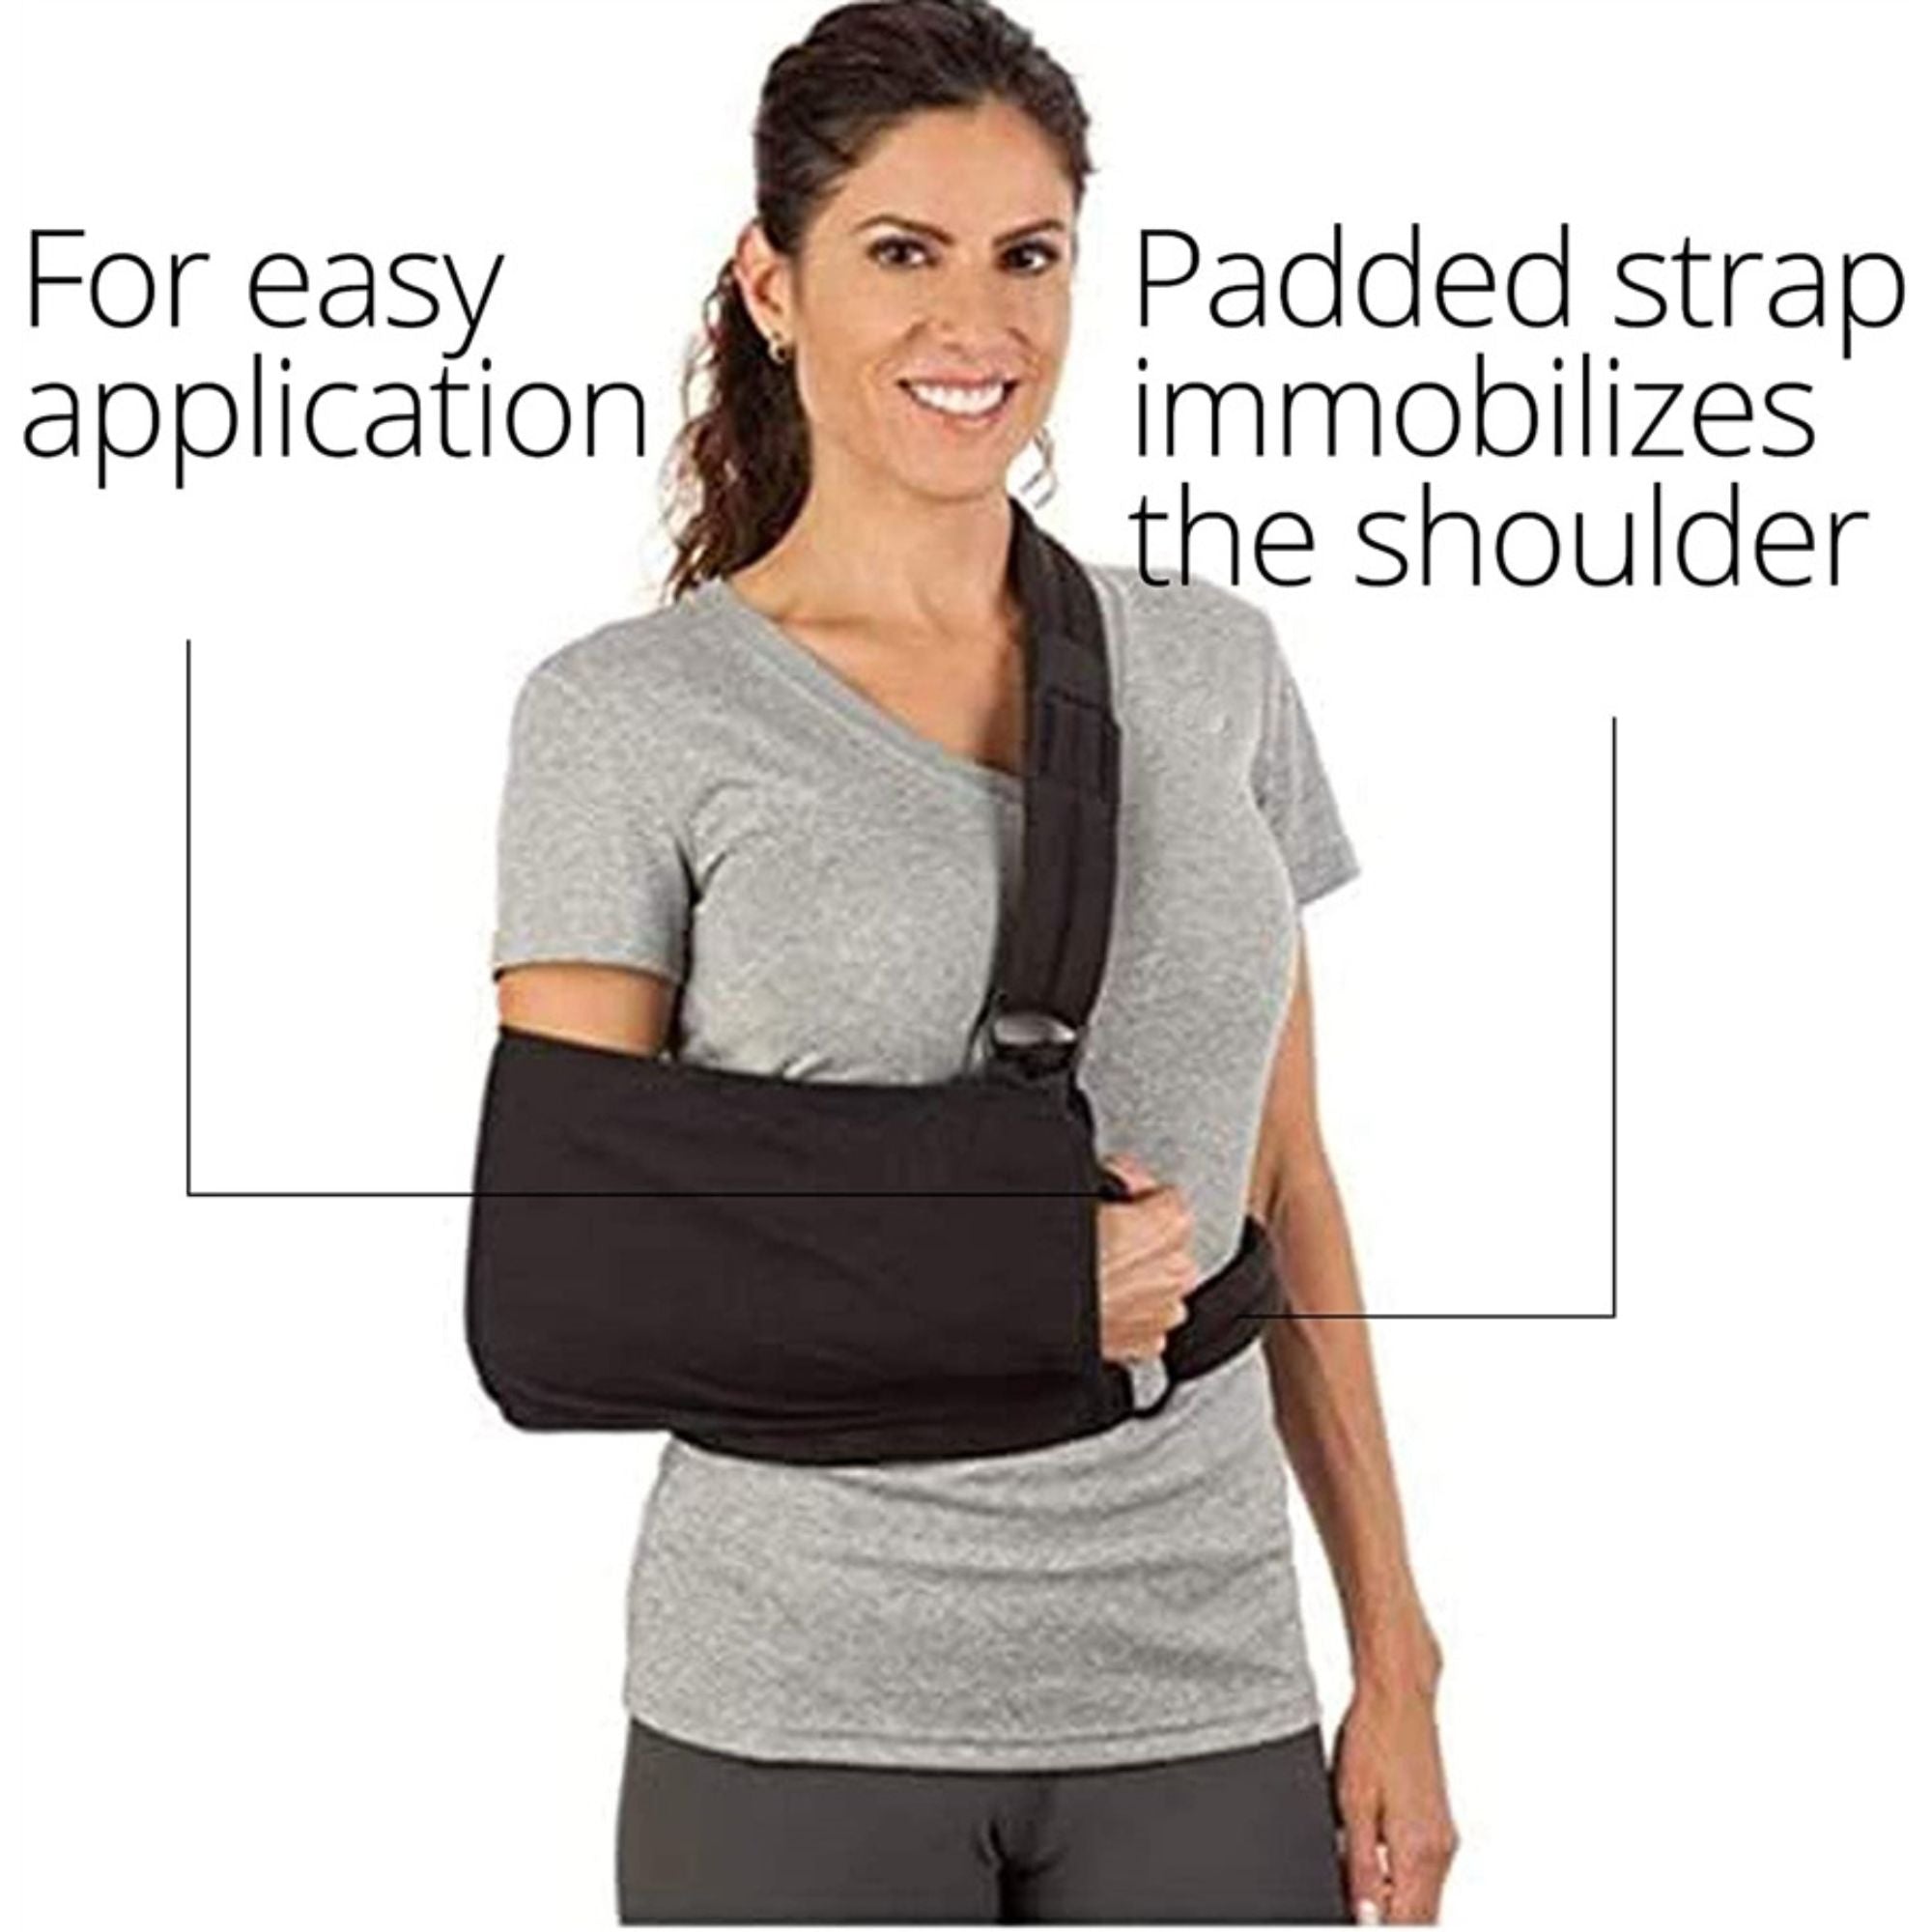 Ossur Padded Strap Shoulder Immobilizer